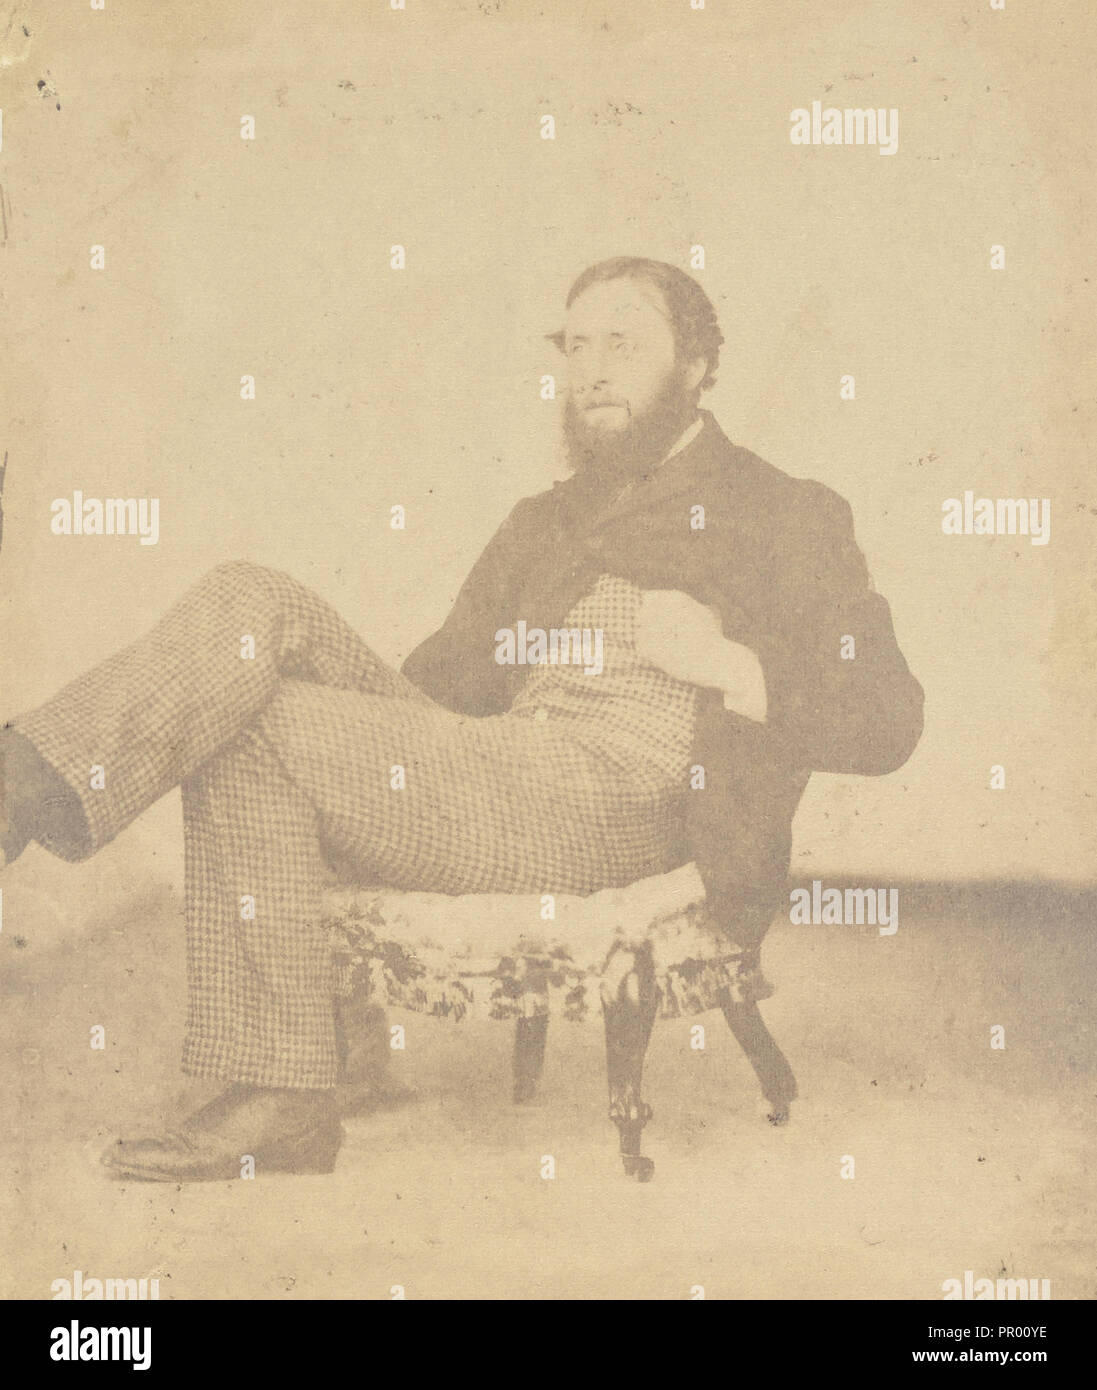 R.M. King, B.C.S; India; 1858 - 1869; Albumen silver print Stock Photo